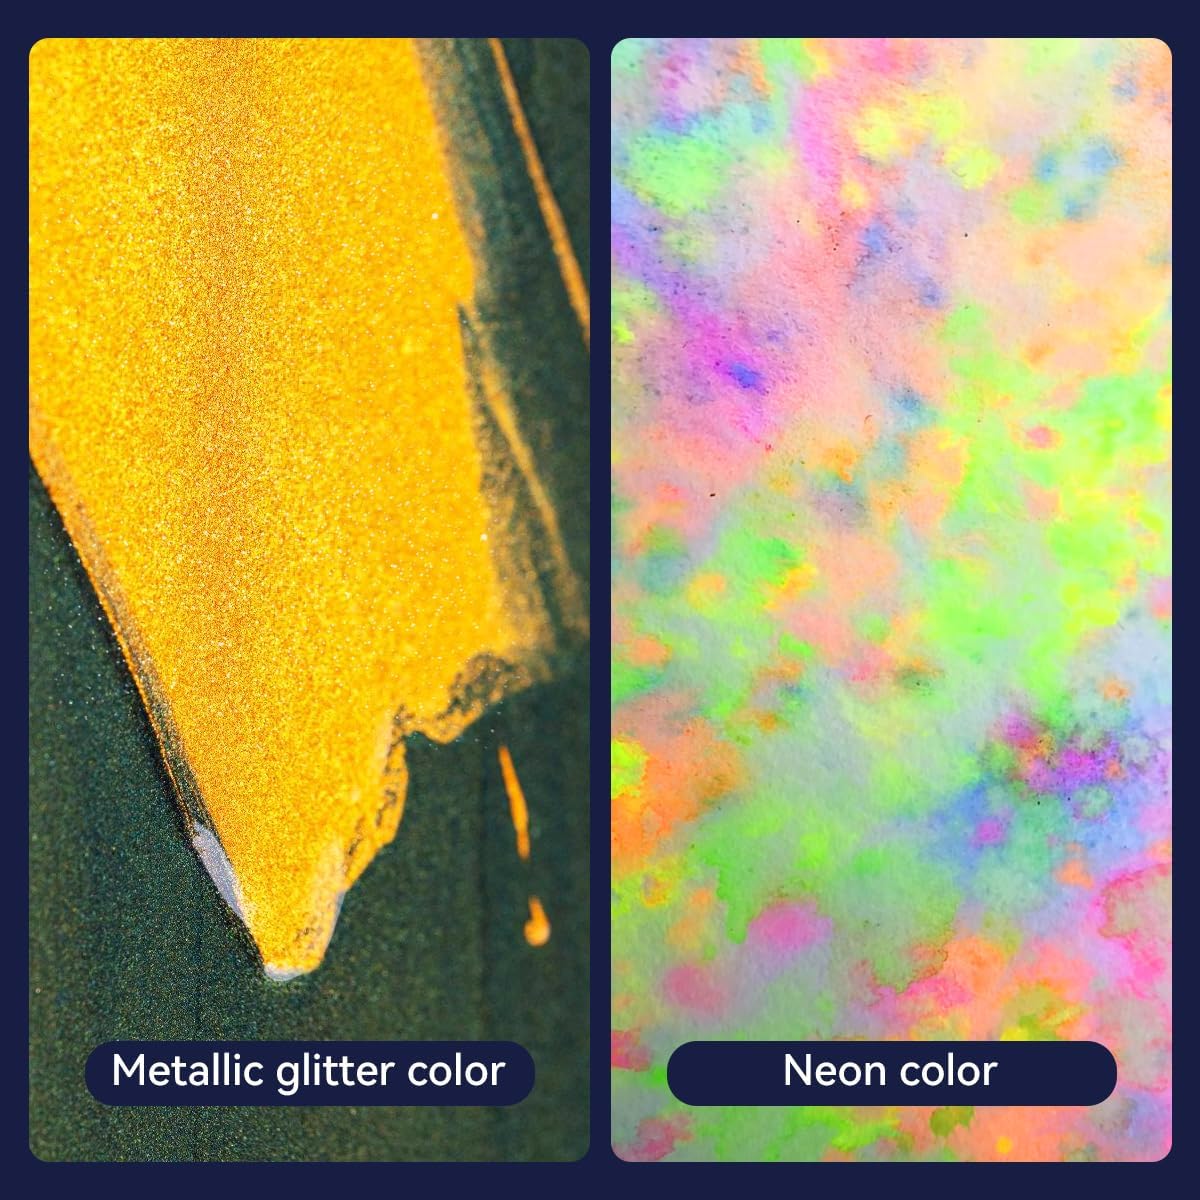 Aquarellfarben-Set – 88 Farben (48 normale Farben, 28 Metallicfarben und 12 fluoreszierende Farben) 